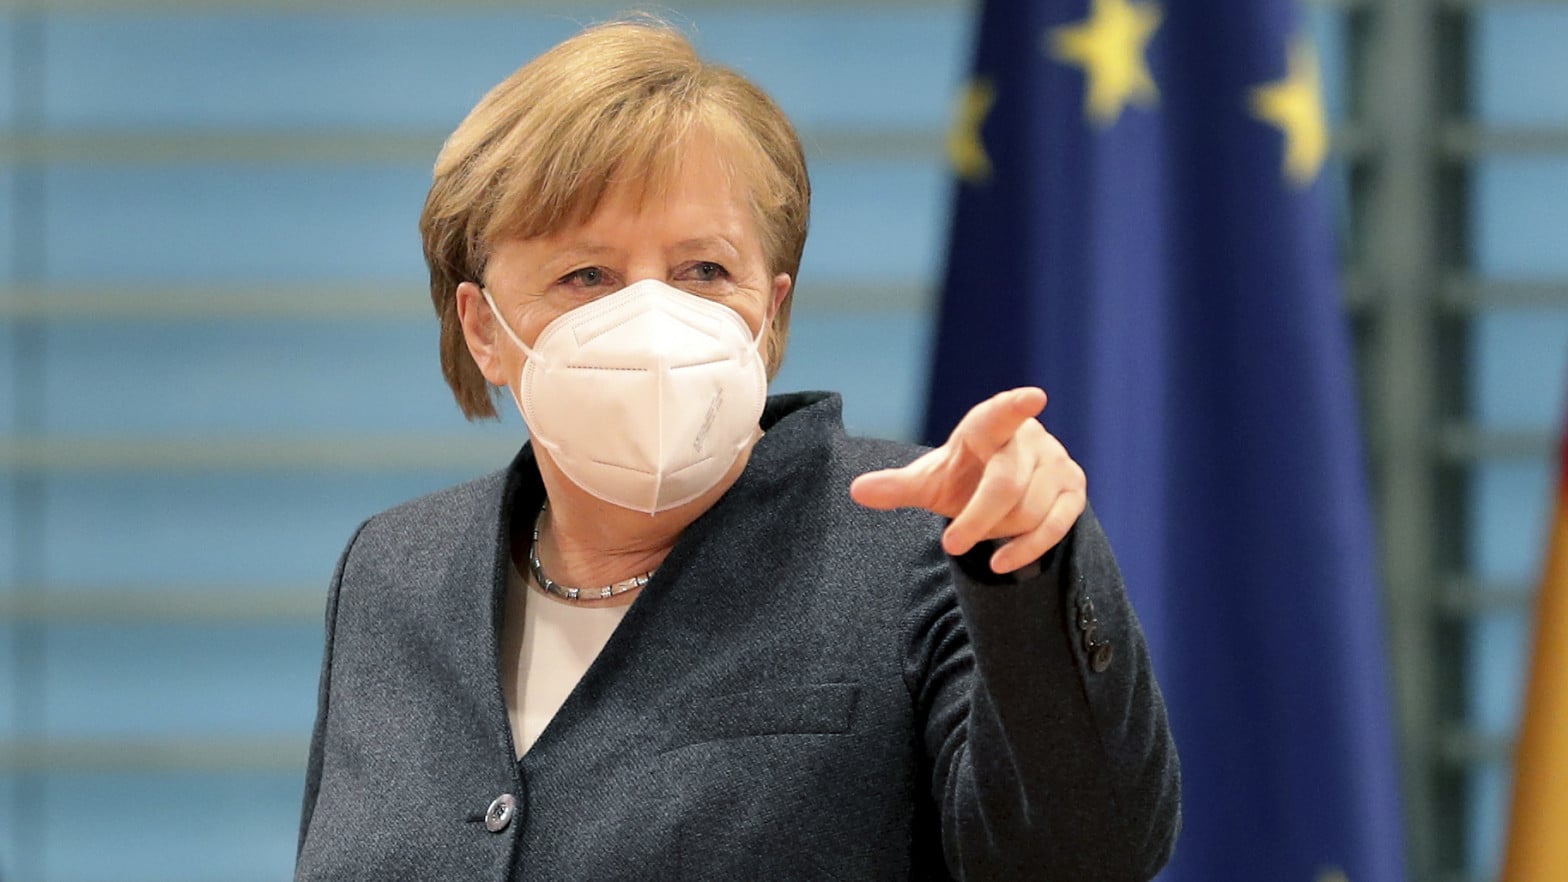 “El número de muertos es espantoso”; afirmó Merkel ante la nueva ola de COVID